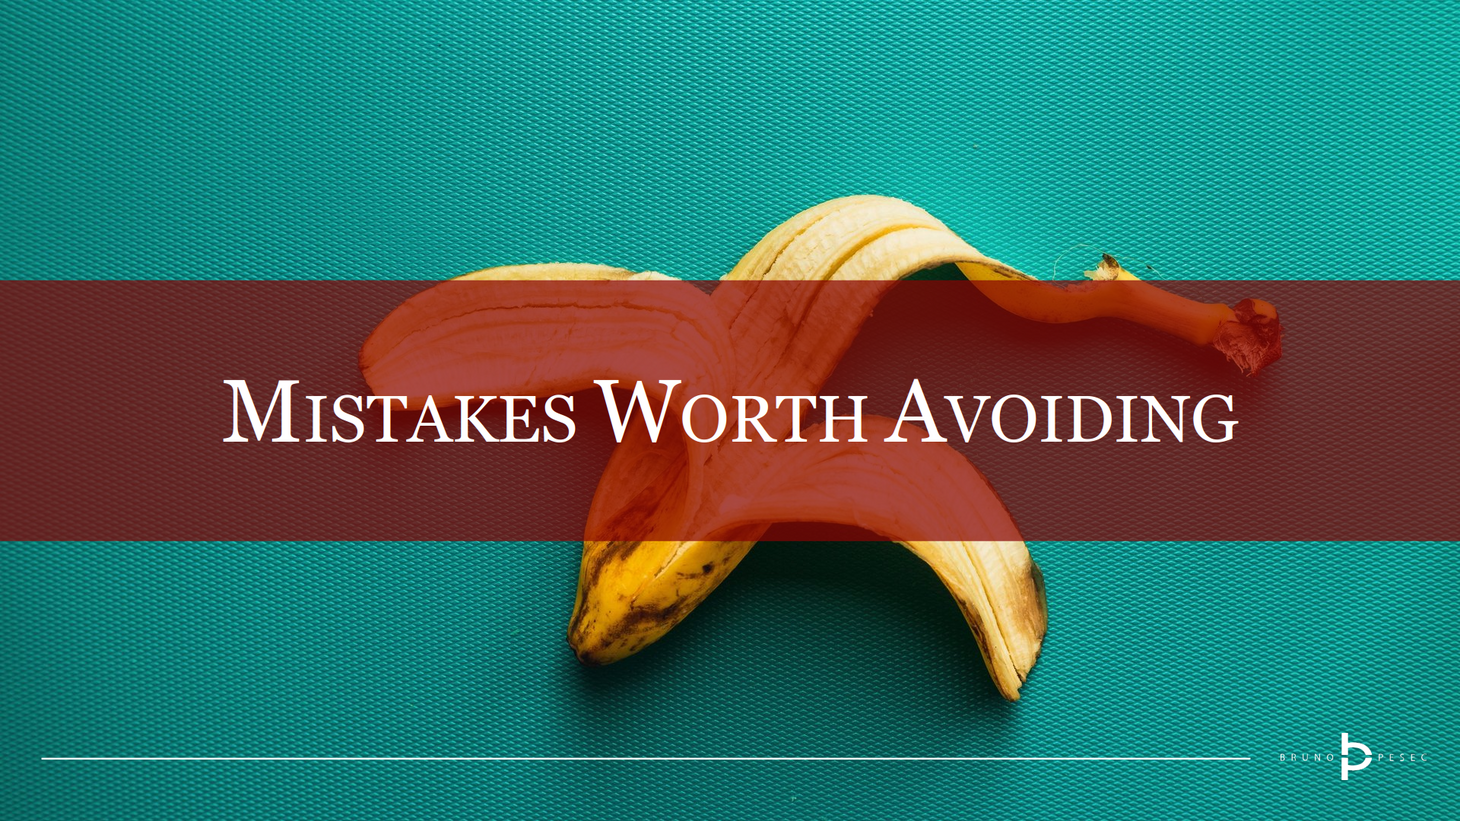 Mistakes worth avoiding